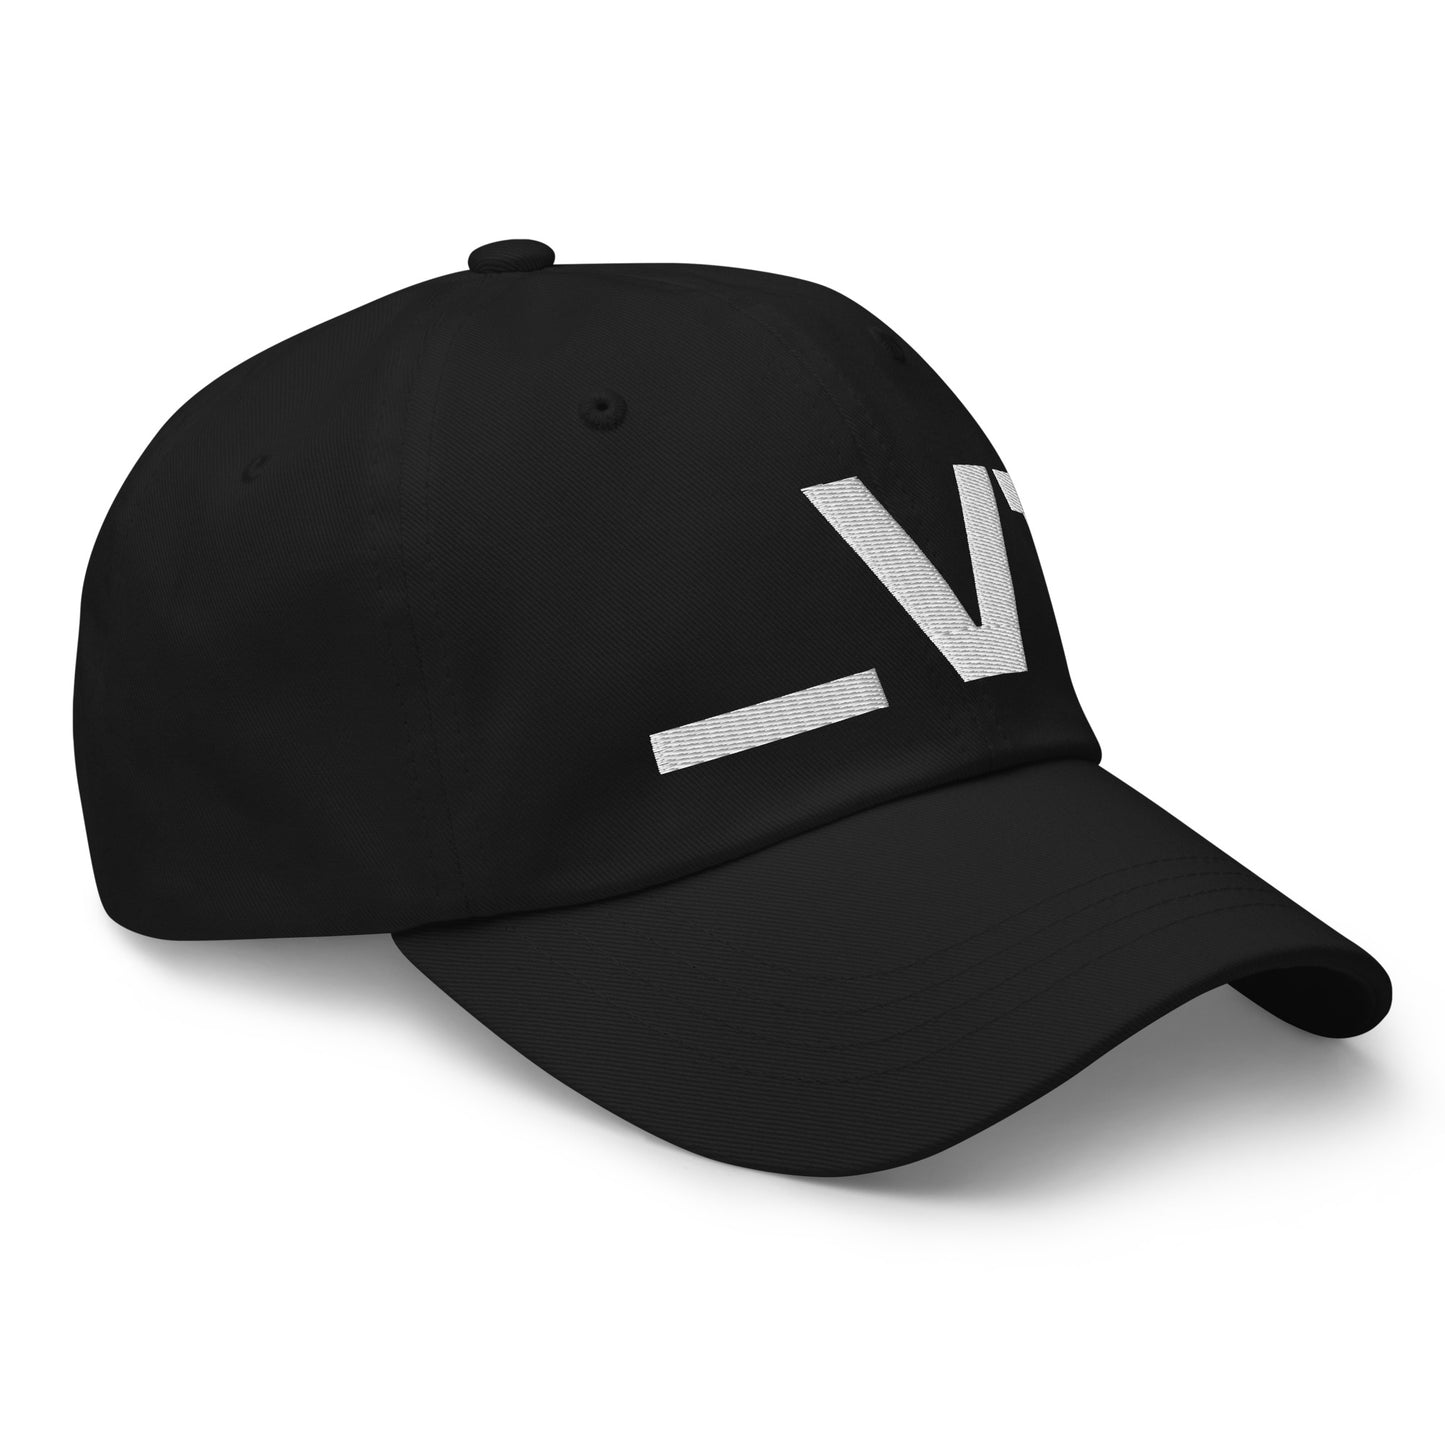 _V1 Embroidered Dad hat